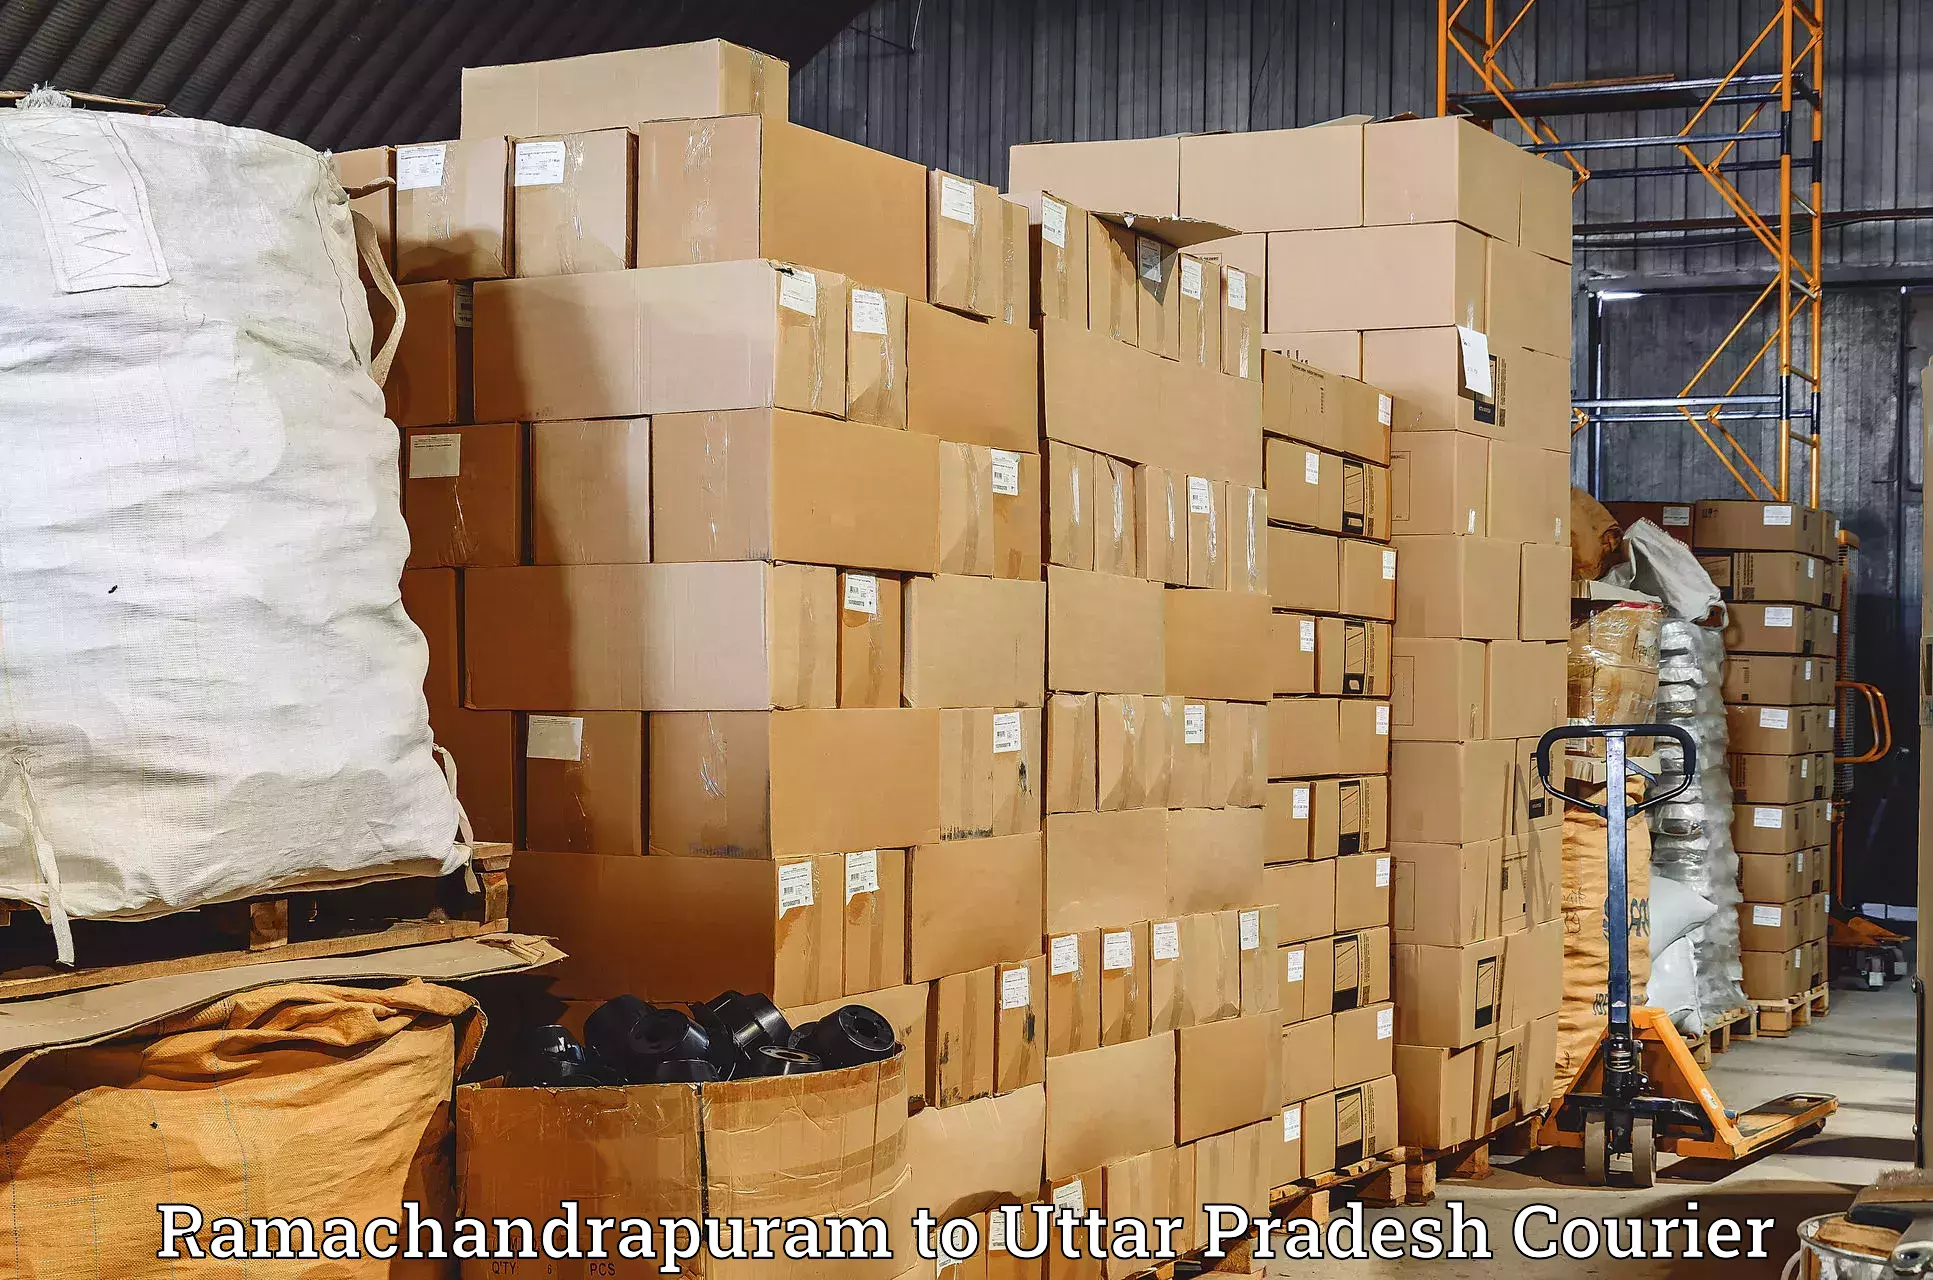 Global courier networks Ramachandrapuram to Varanasi